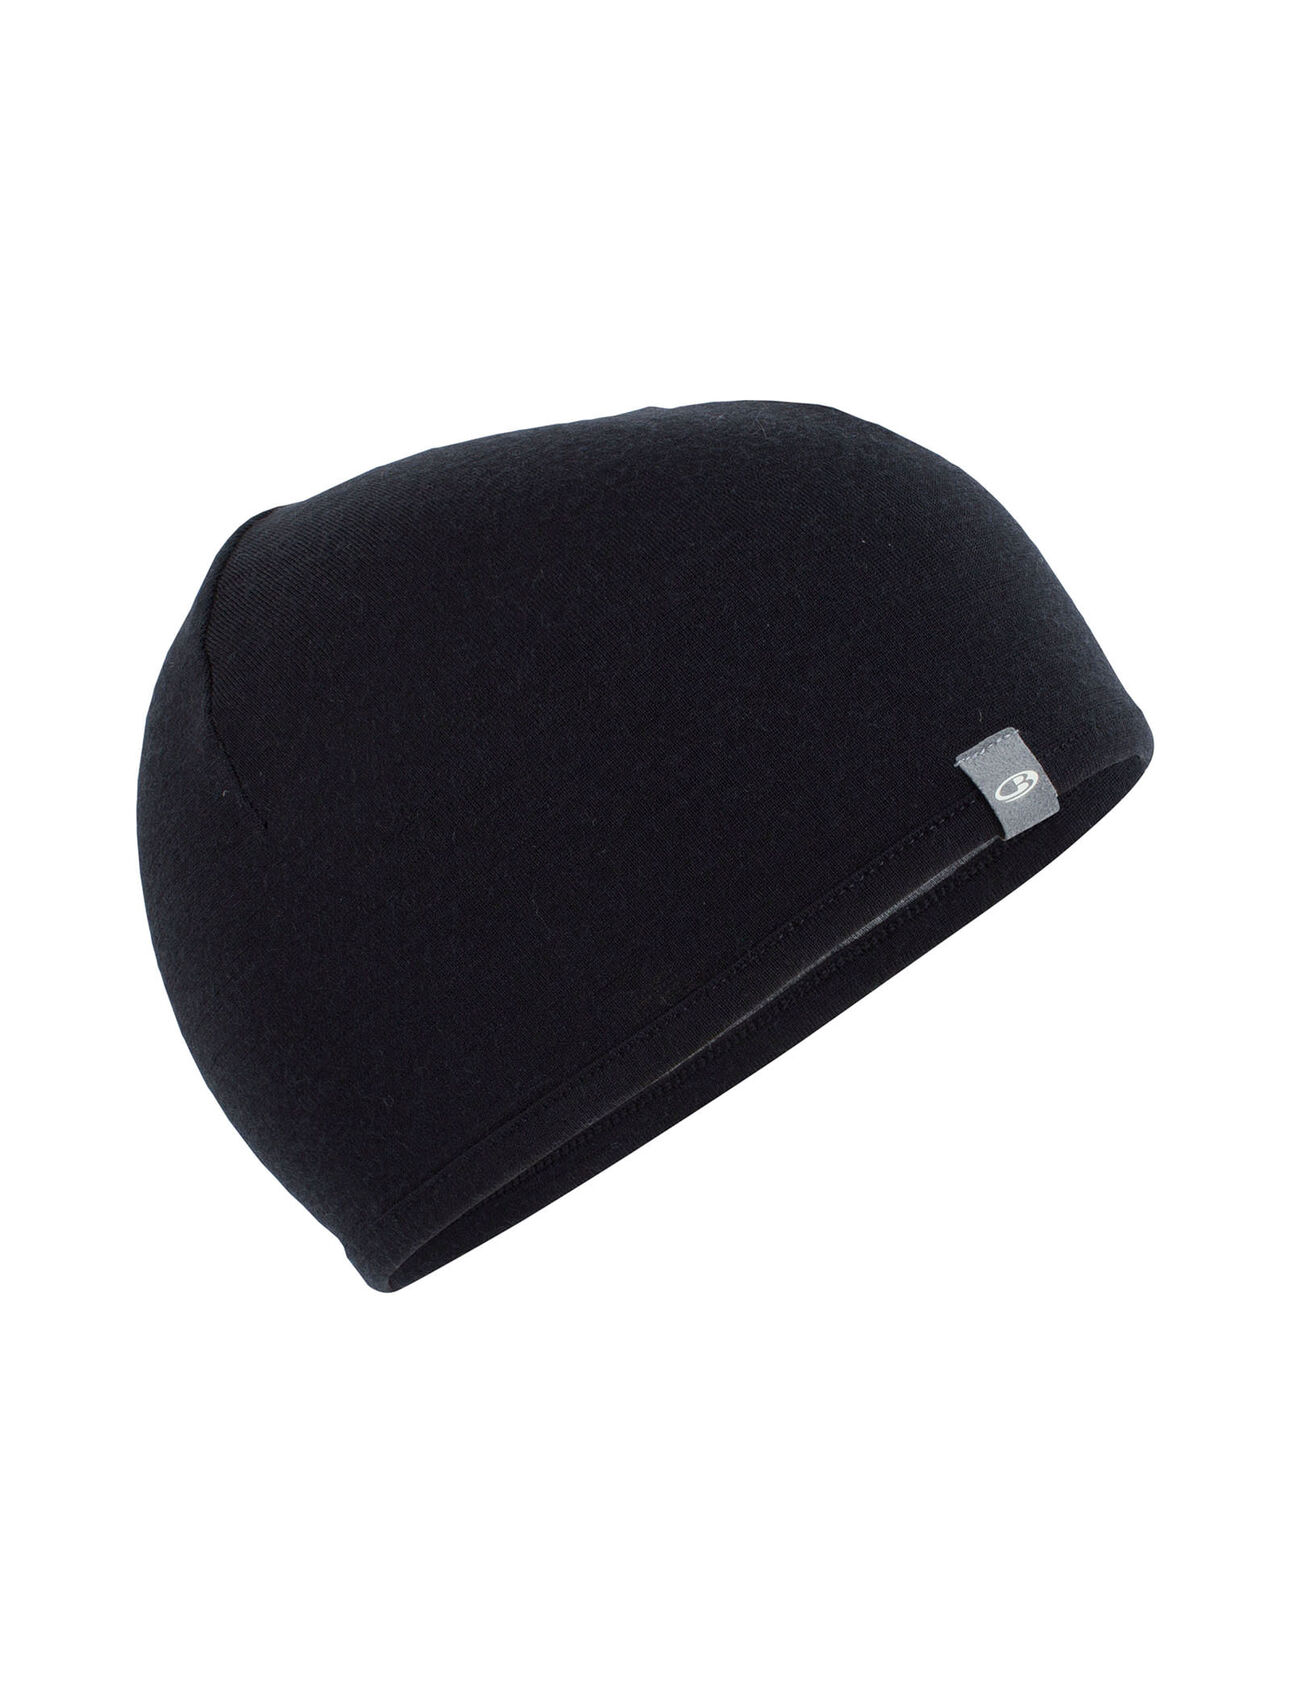 Icebreaker Pocket Hat - Pipo